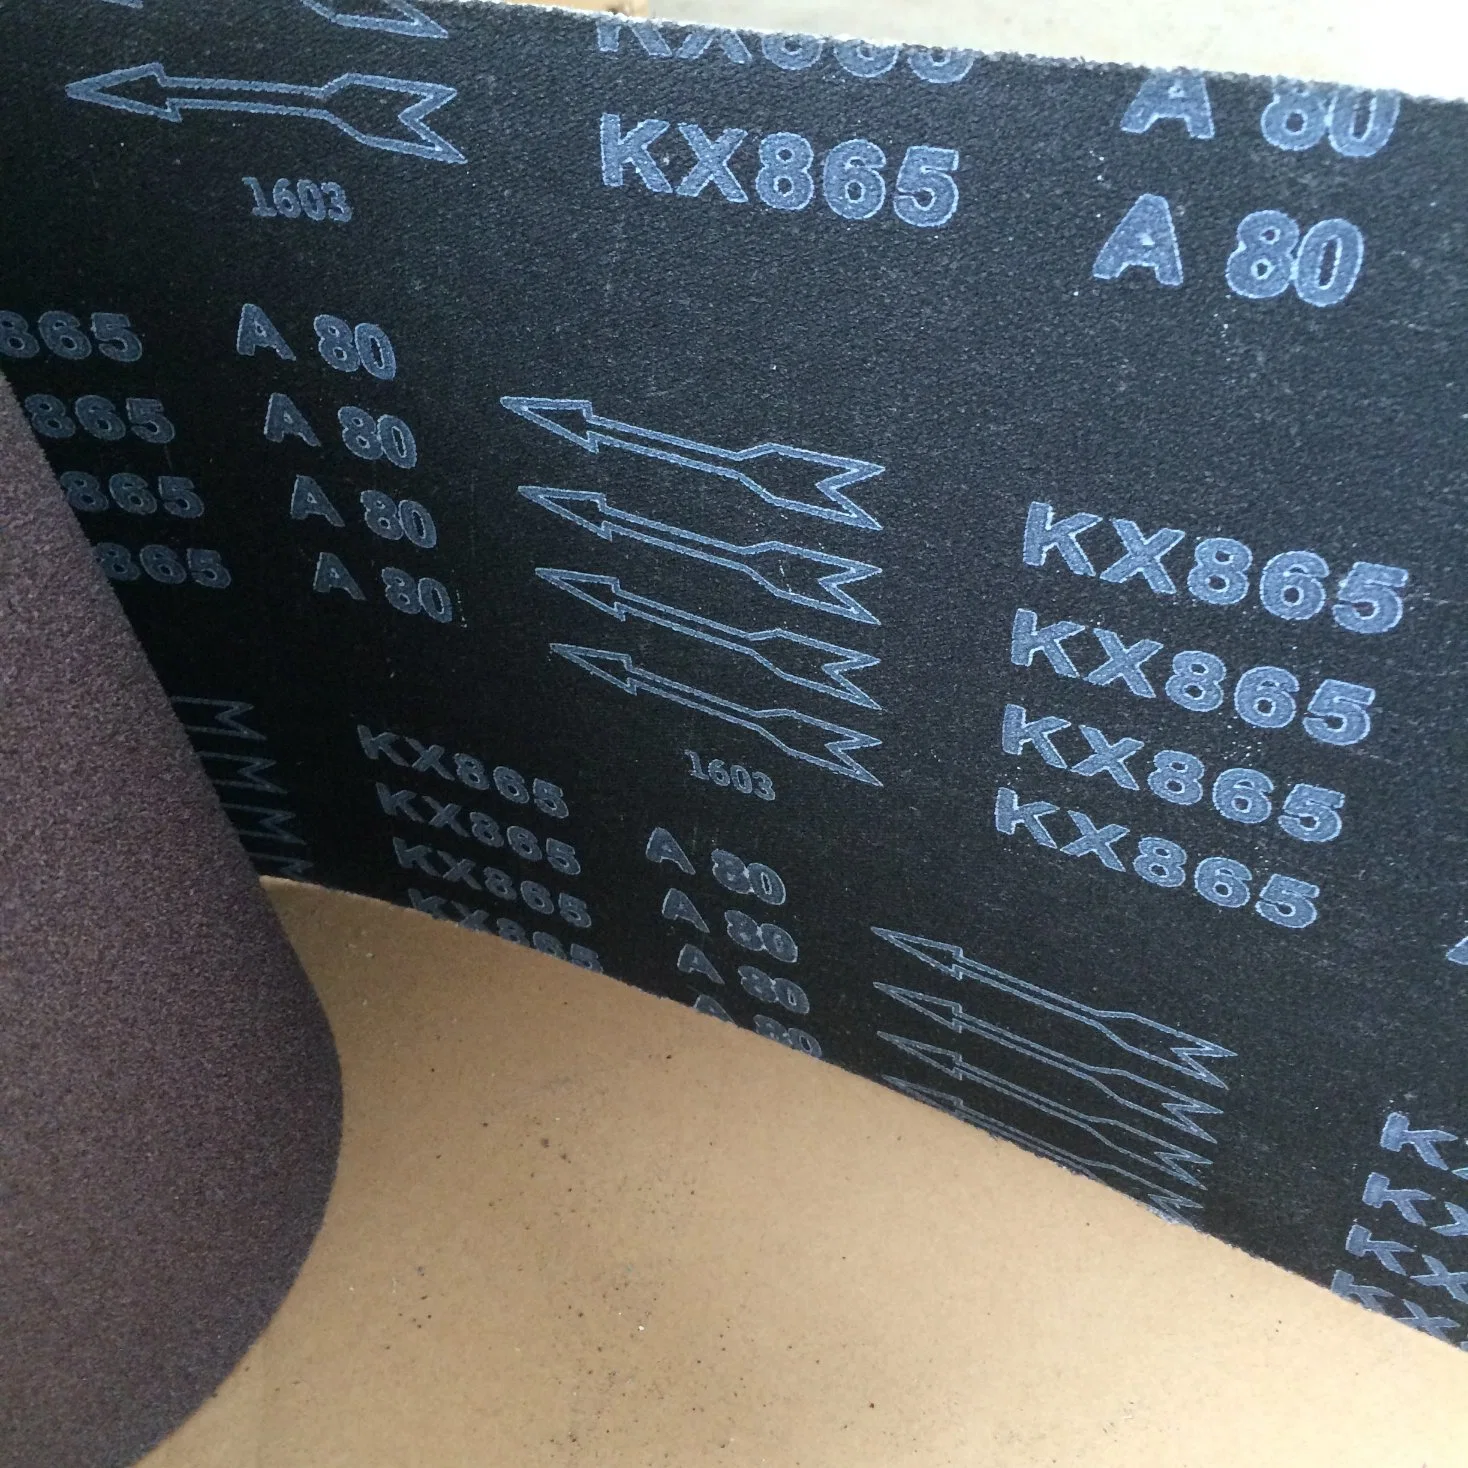 X-wt tela tela abrasiva Kx865 calcinado de óxido de aluminio para disco de mariposa